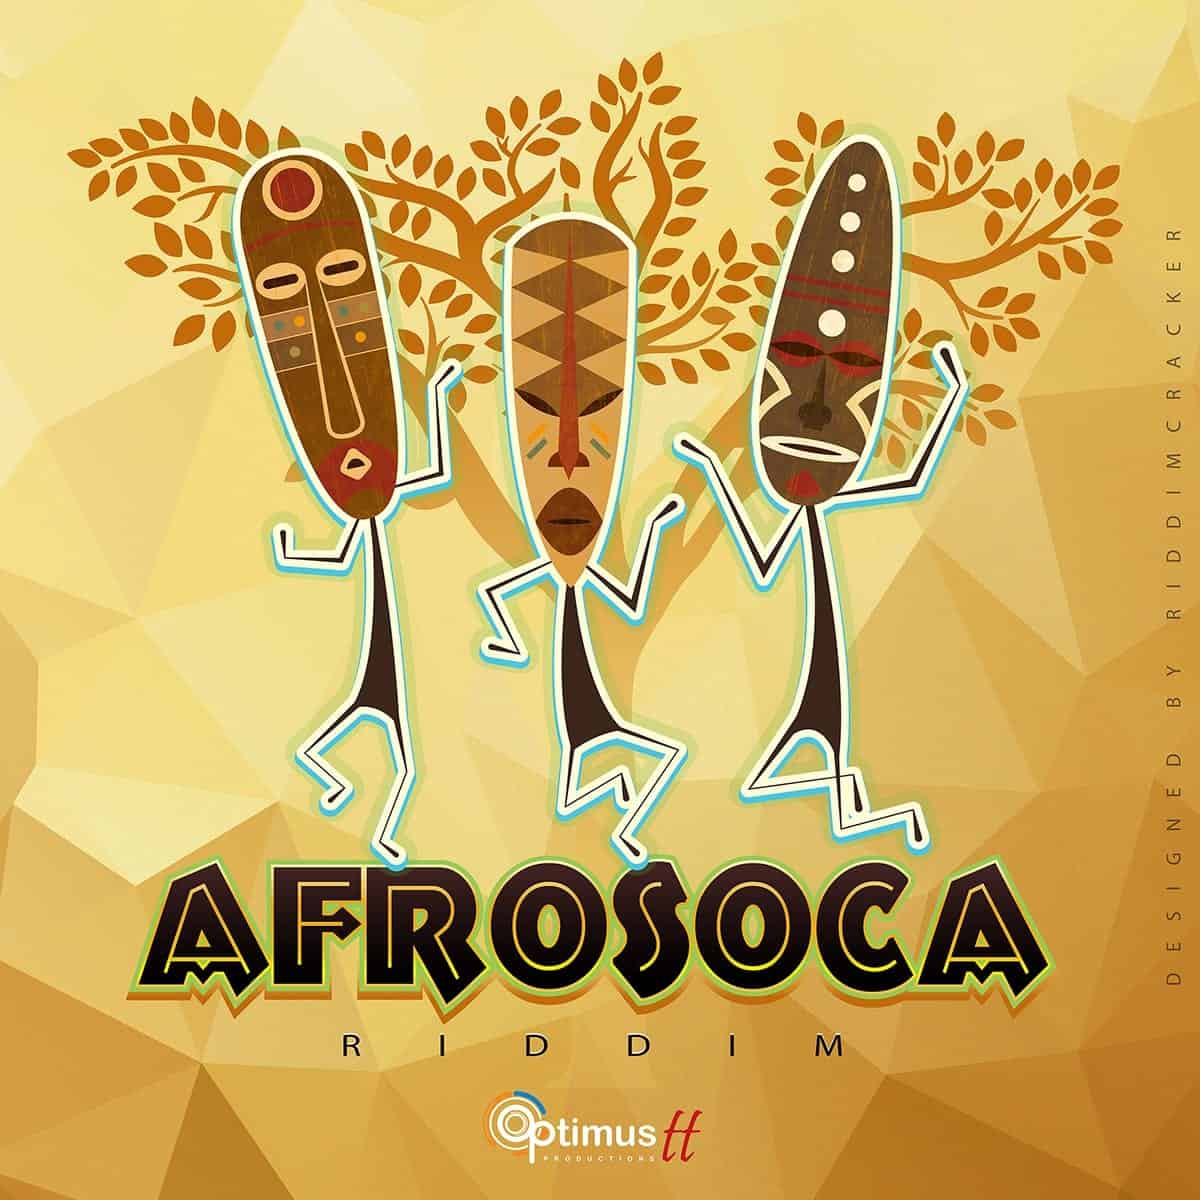 AfroSoca Riddim - Optimus Productions TT - 2016 Afro Soca